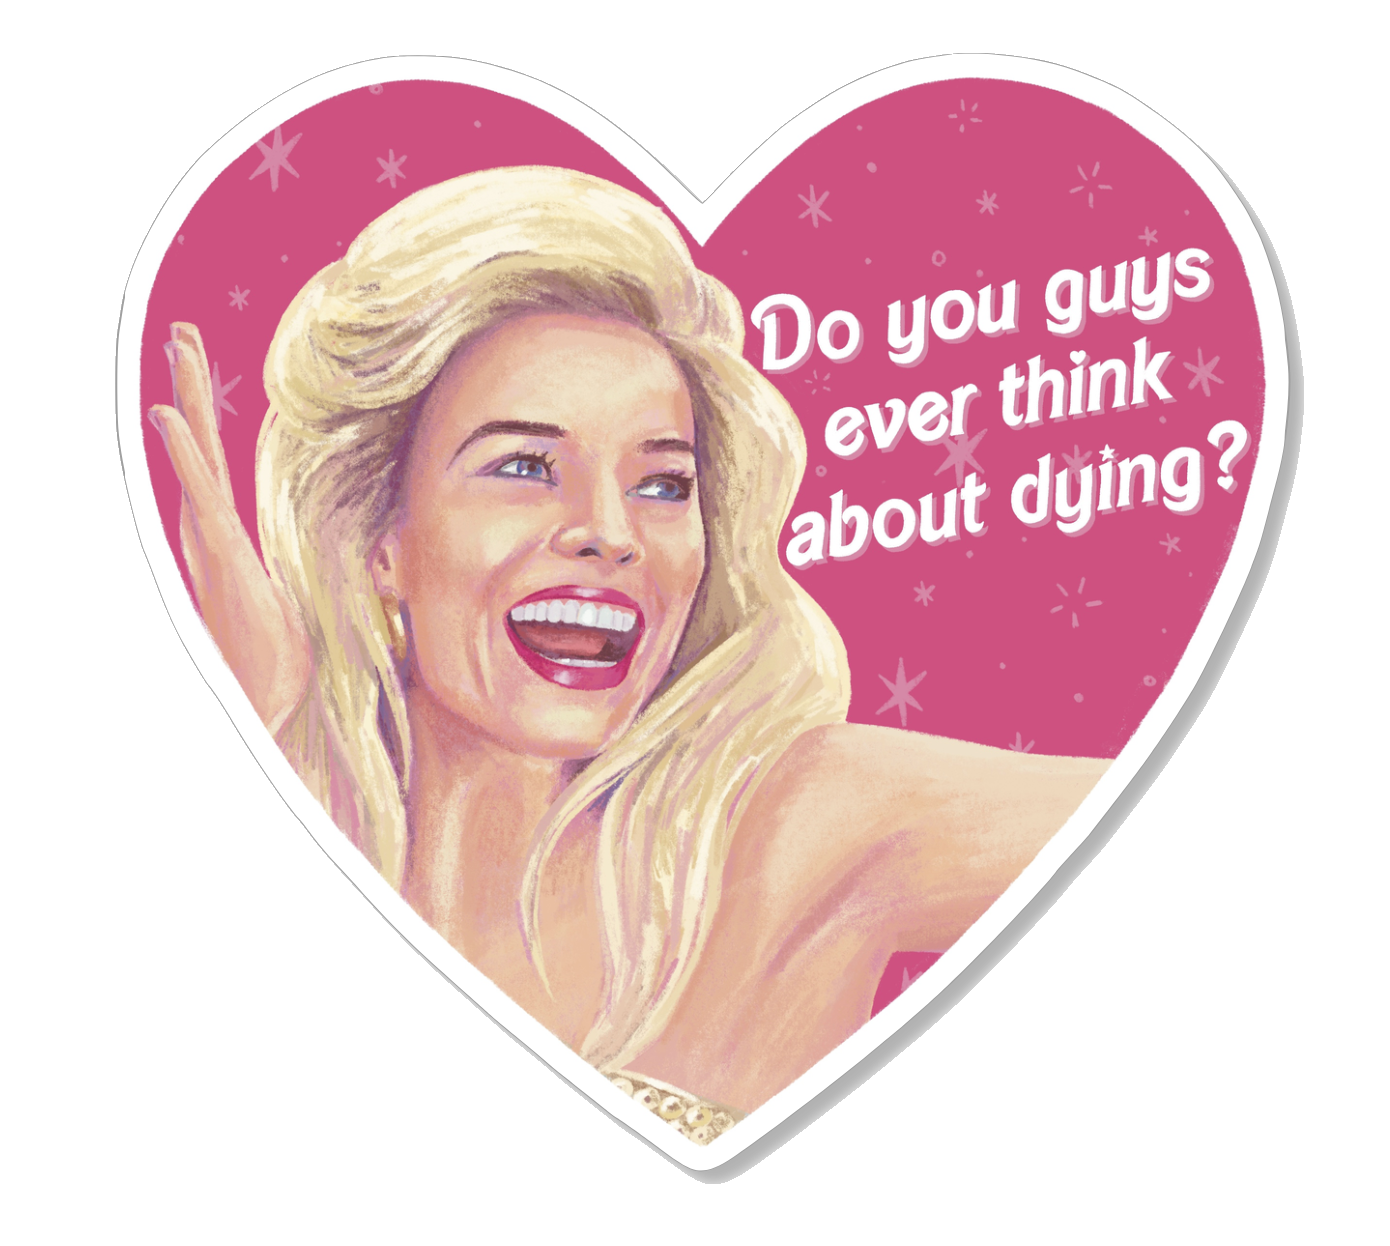 Allan Barbie Movie Sticker – Snark Gifts